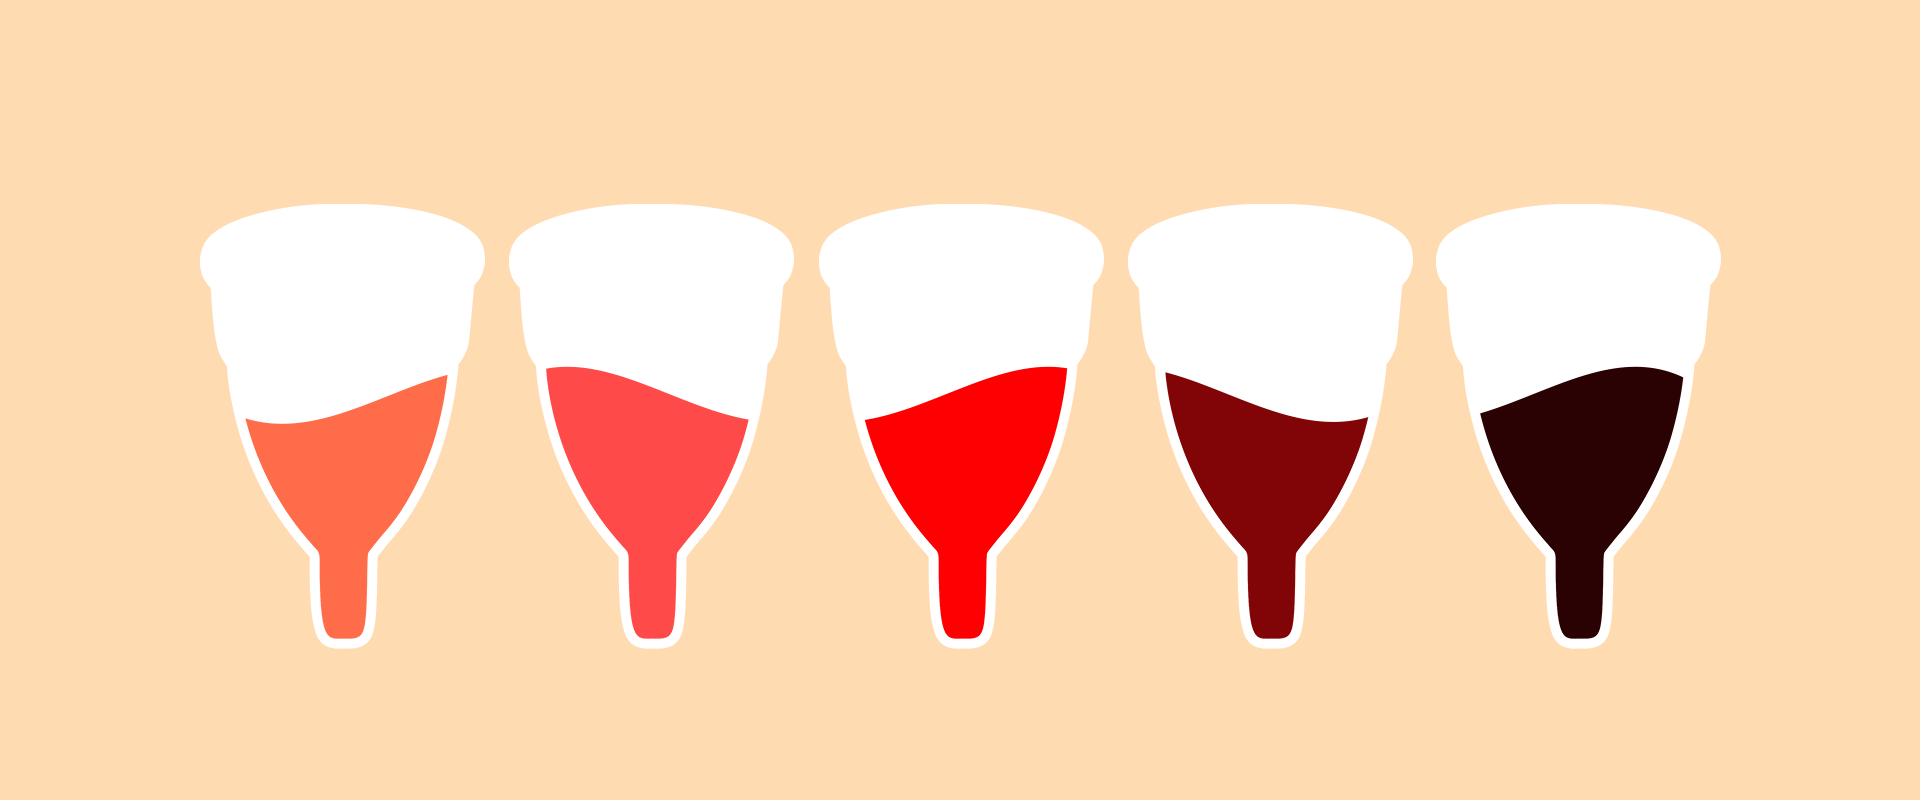 Cor da menstruação marrom, vermelho e preto: é normal?